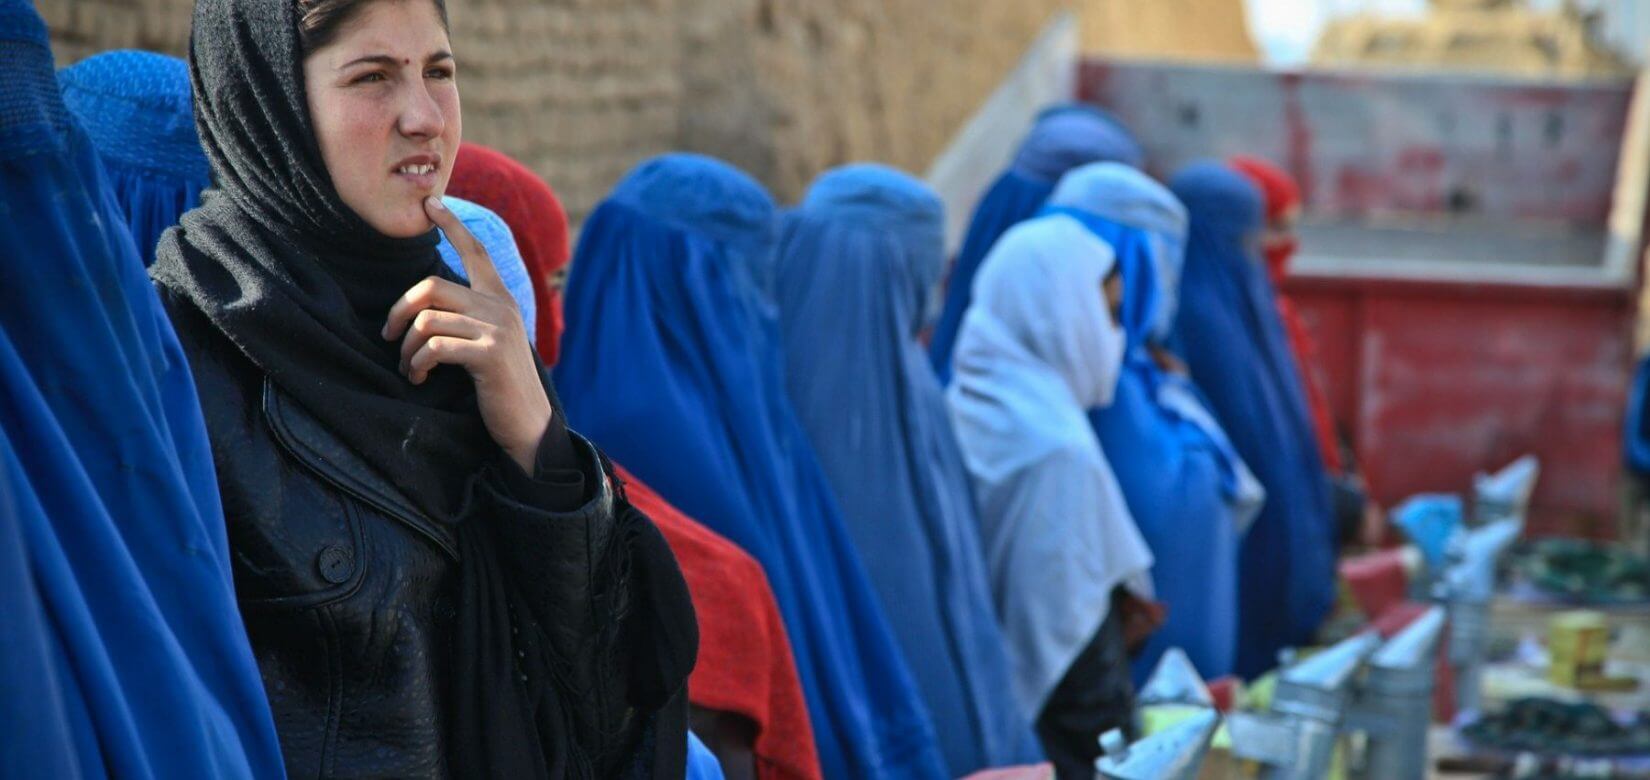 Συγκινεί κορίτσι από το Αφγανιστάν: «Θα πεθάνουμε αργά μέσα στην ιστορία»